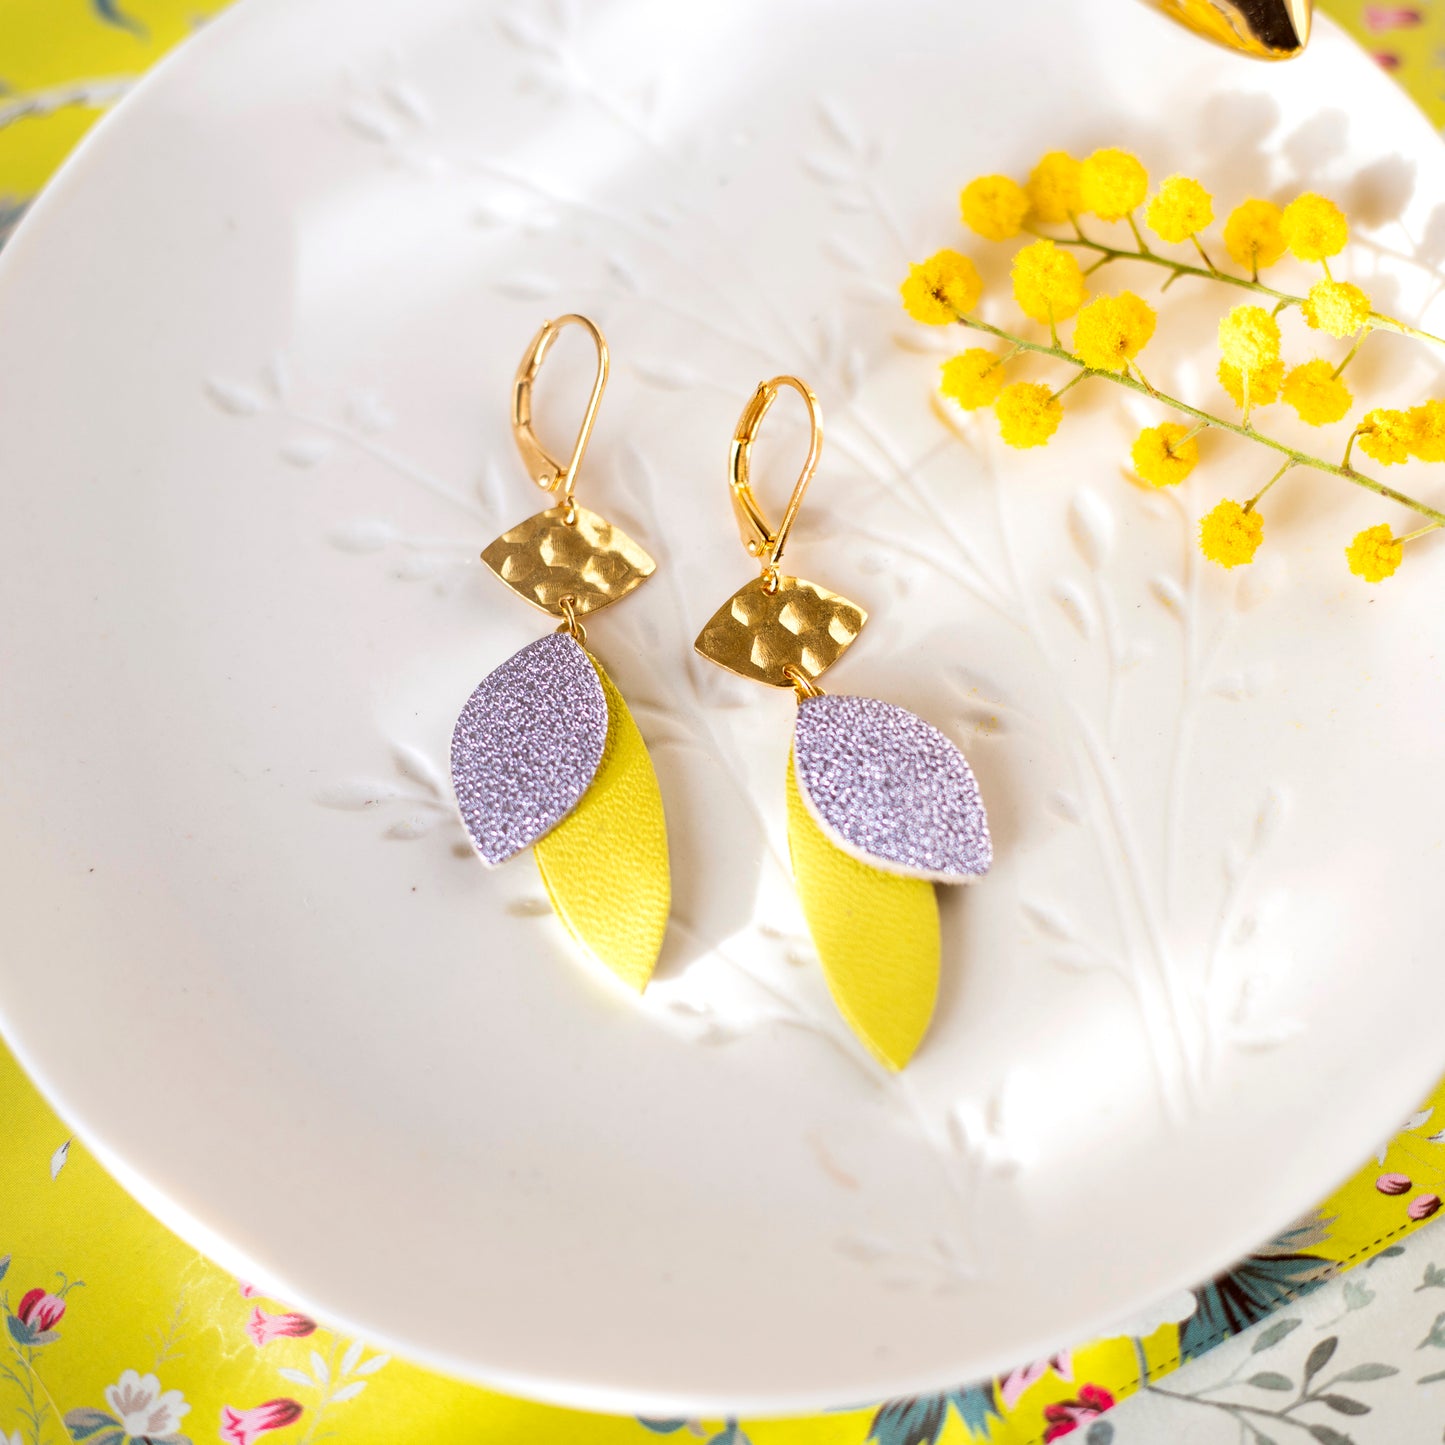 Lozaa earrings - metallic grey-blue and lemon yellow leather petals